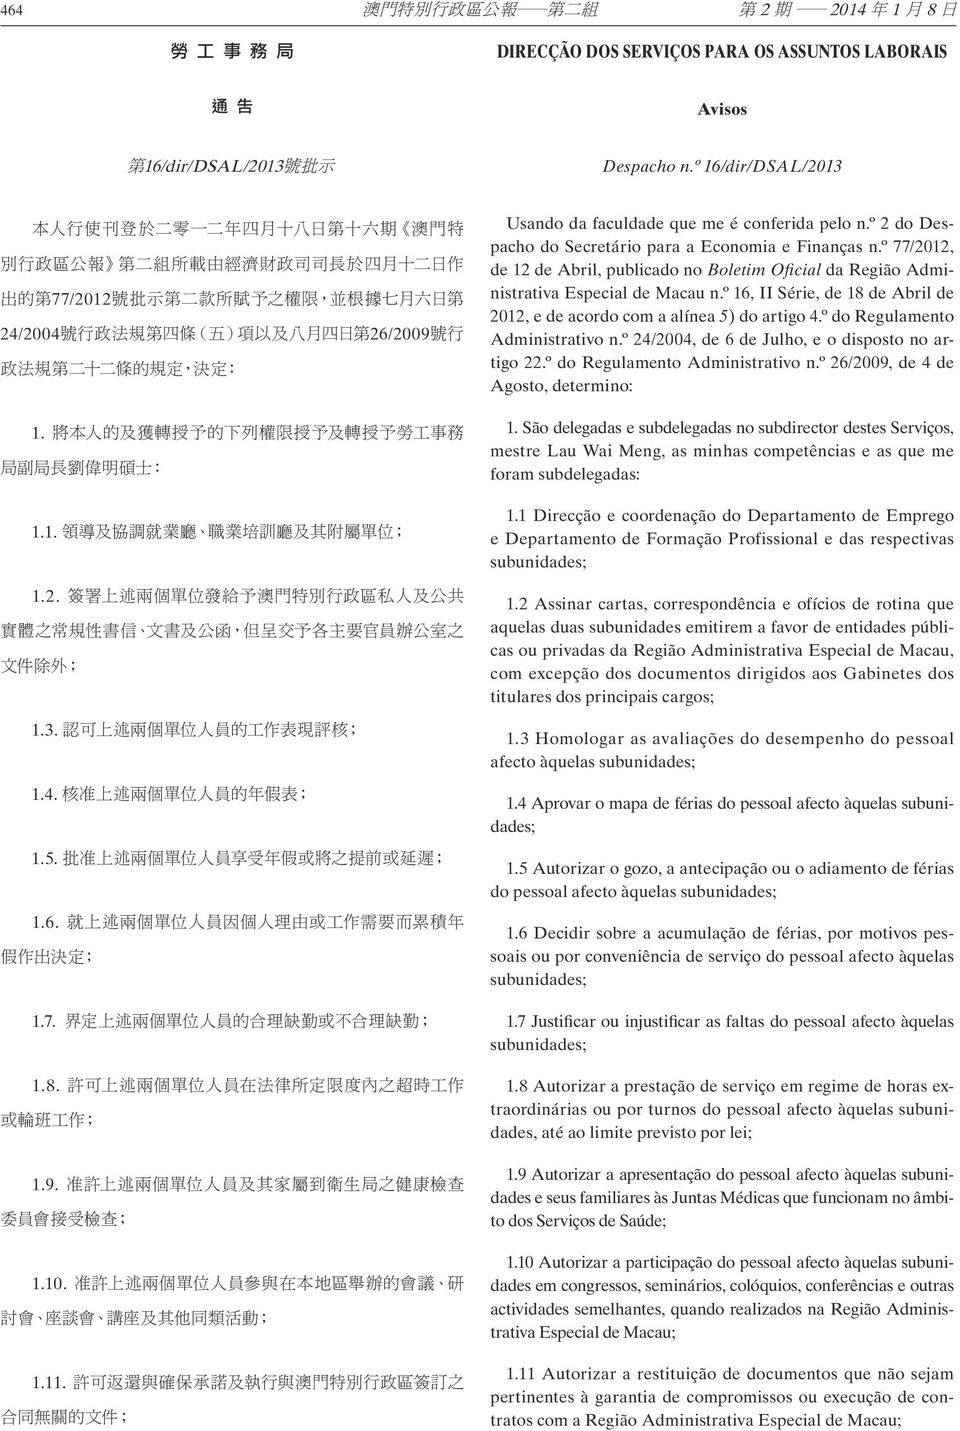 º 77/2012, de 12 de Abril, publicado no Boletim Oficial da Região Administrativa Especial de Macau n.º 16, II Série, de 18 de Abril de 2012, e de acordo com a alínea 5) do artigo 4.